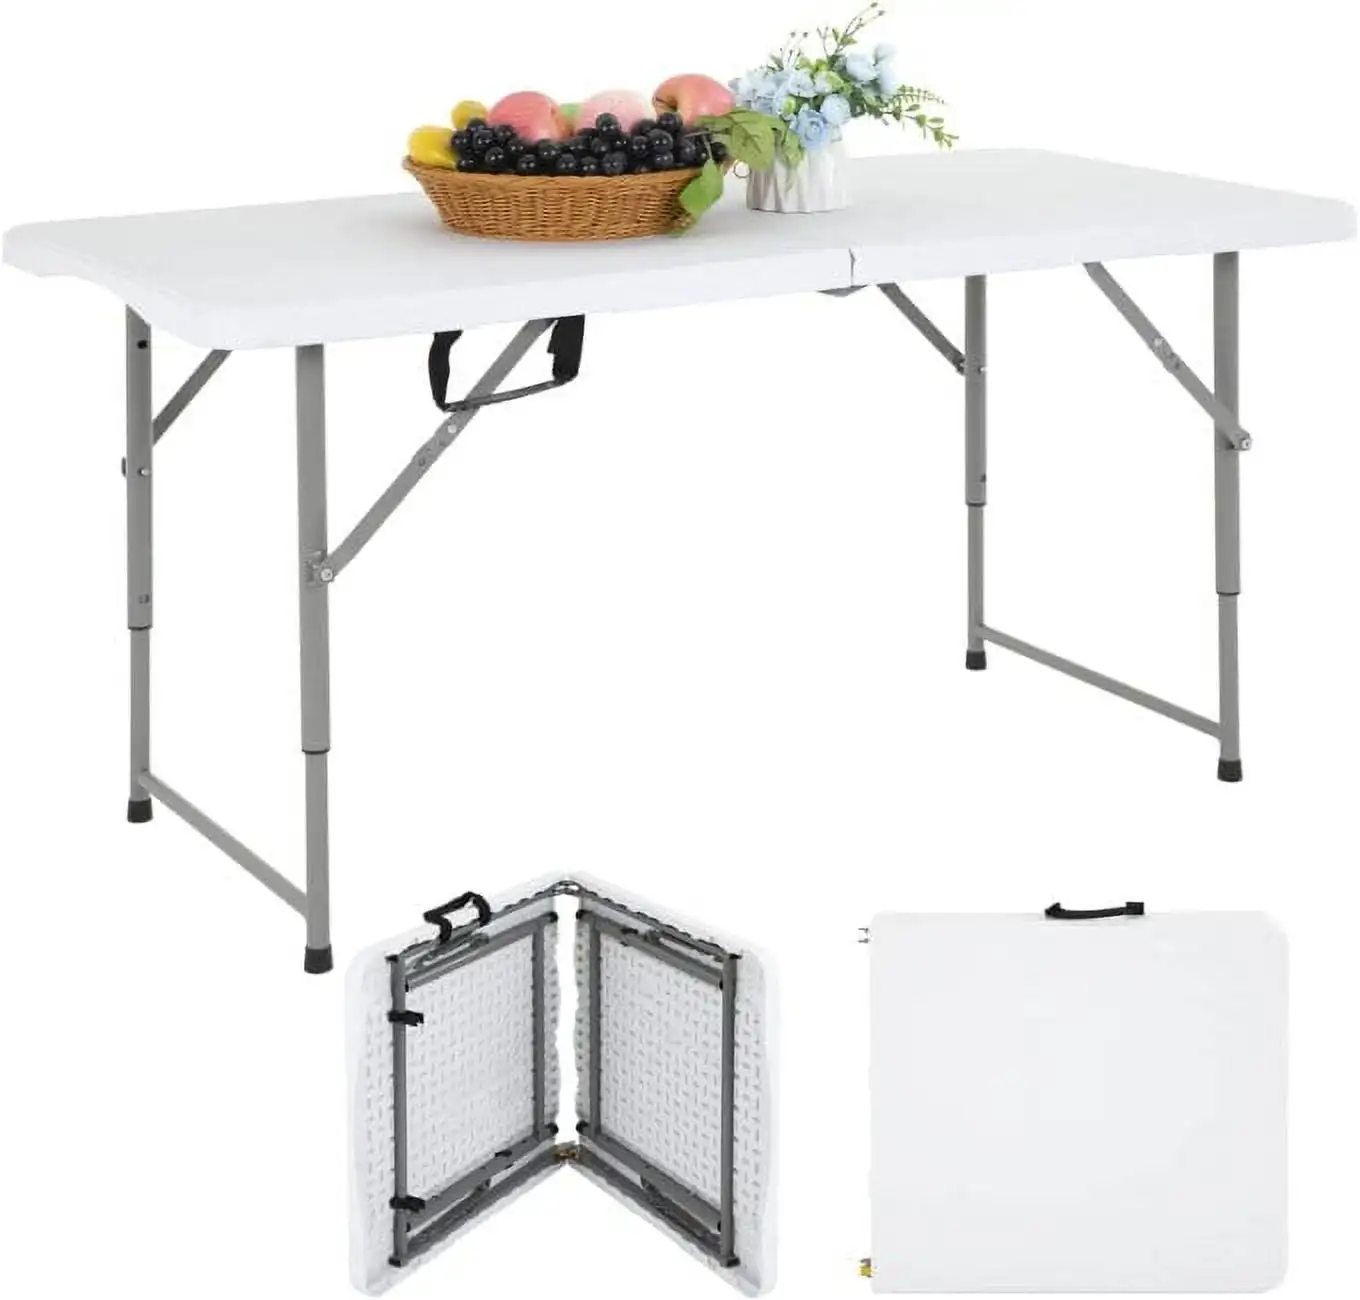 

Складной стол 4 фута, офисный стол с регулируемой высотой для кемпинга, белый столик для дома и улицы, скамейка для пикника и кемпинга